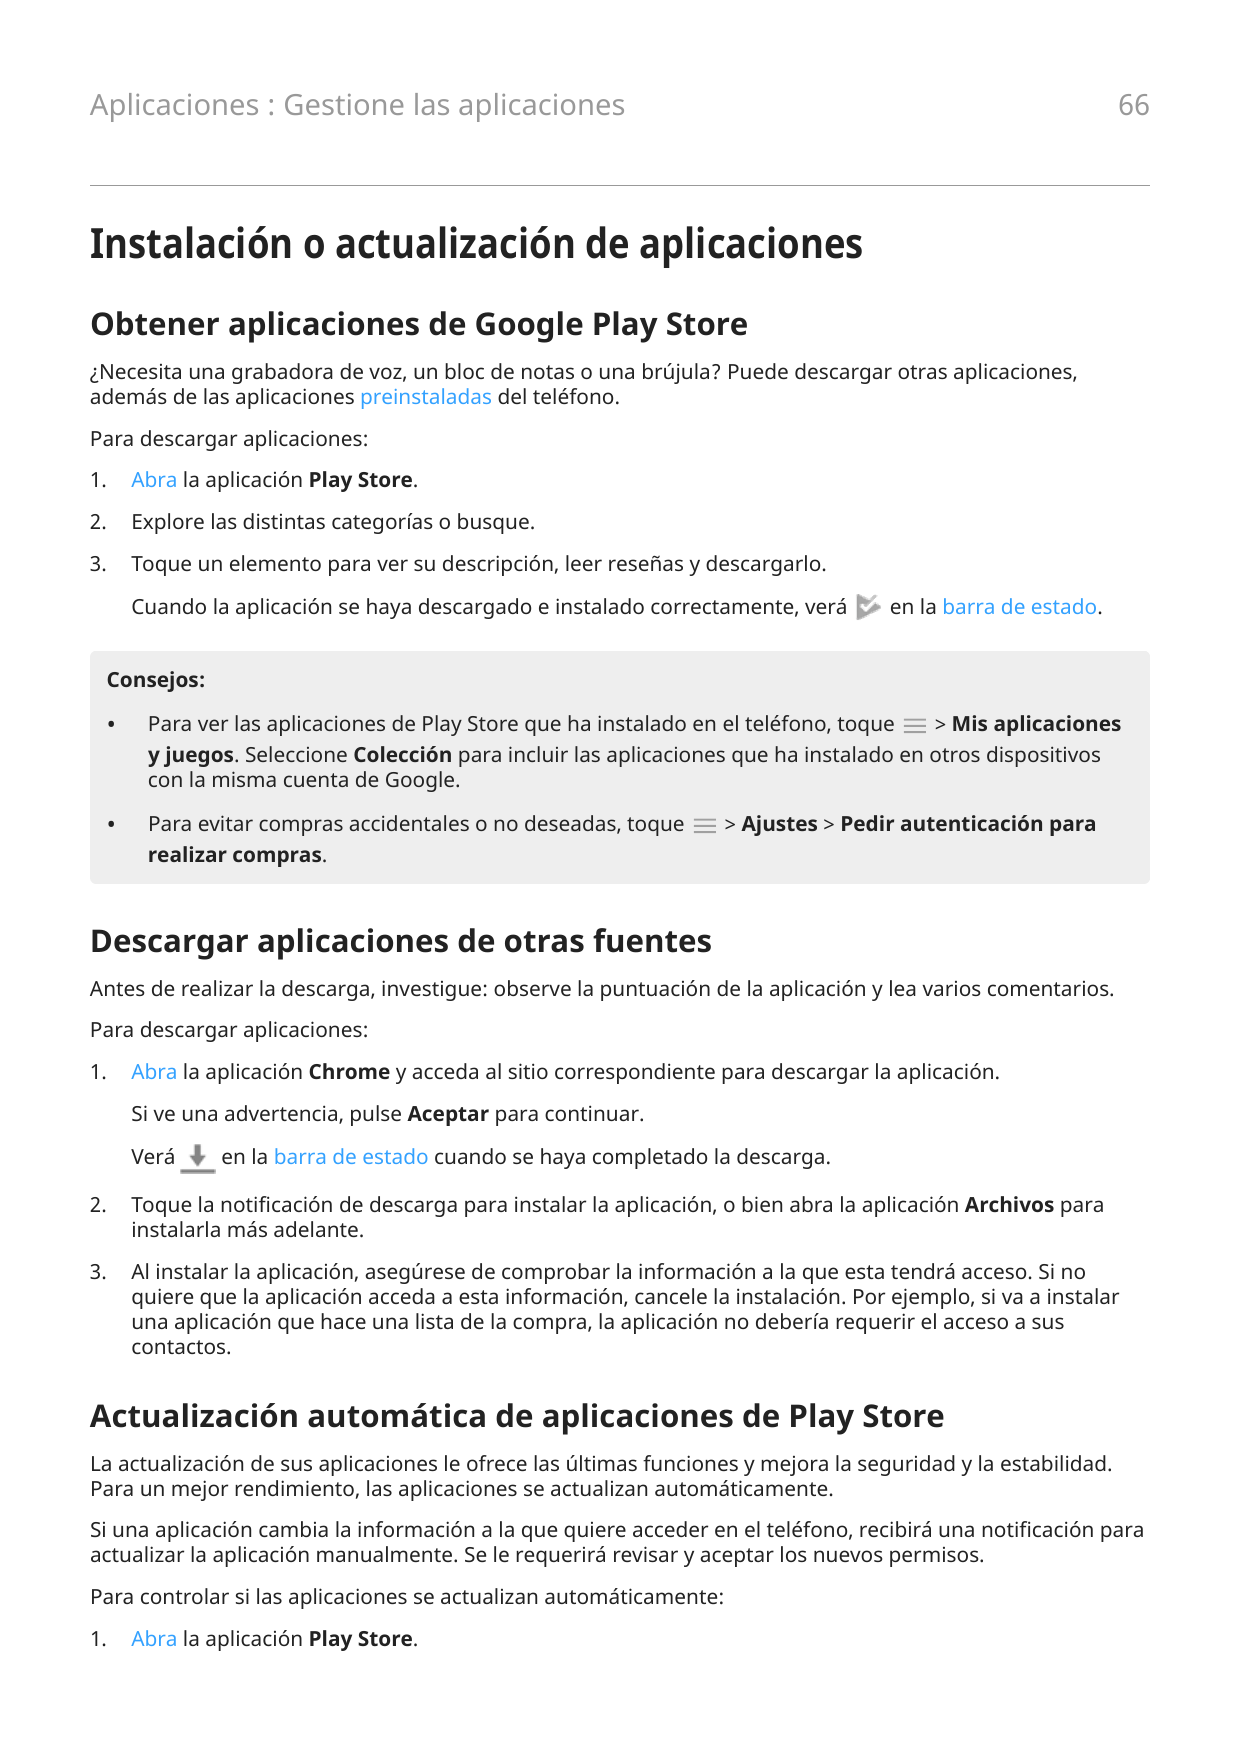 66Aplicaciones : Gestione las aplicacionesInstalación o actualización de aplicacionesObtener aplicaciones de Google Play Store¿N